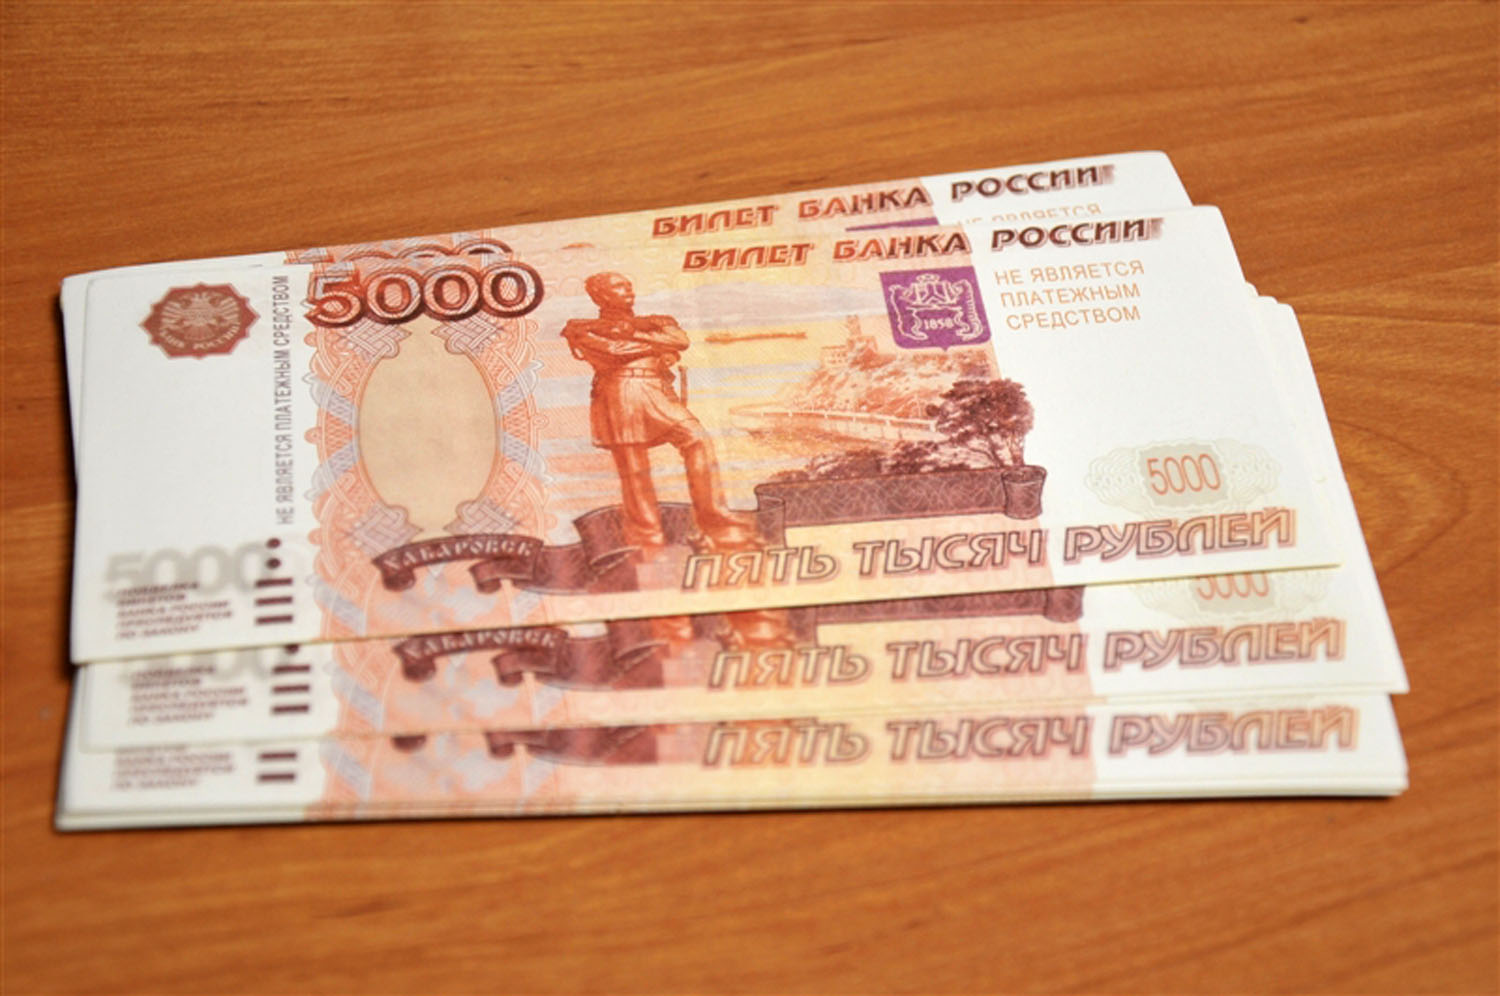 15 000 карт. Деньги 5000 рублей. 15000 Рублей. Деньги 15000 рублей. 20 Тысяч рублей.